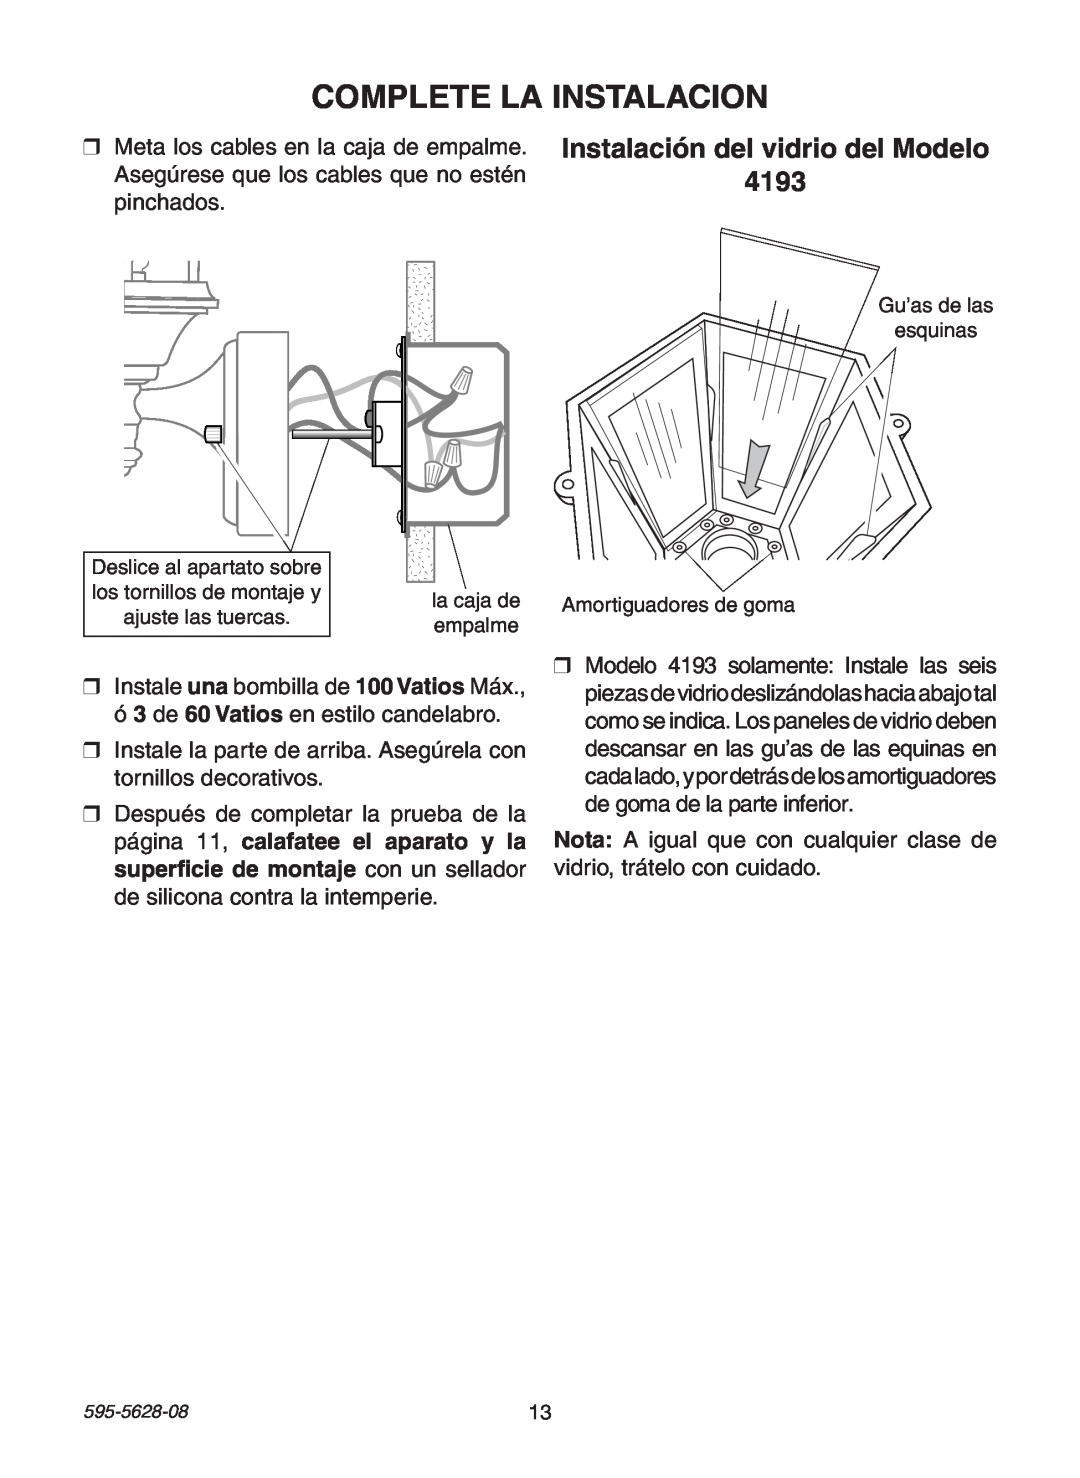 Heath Zenith SL-4190 Series manual Complete La Instalacion, Instalación del vidrio del Modelo 